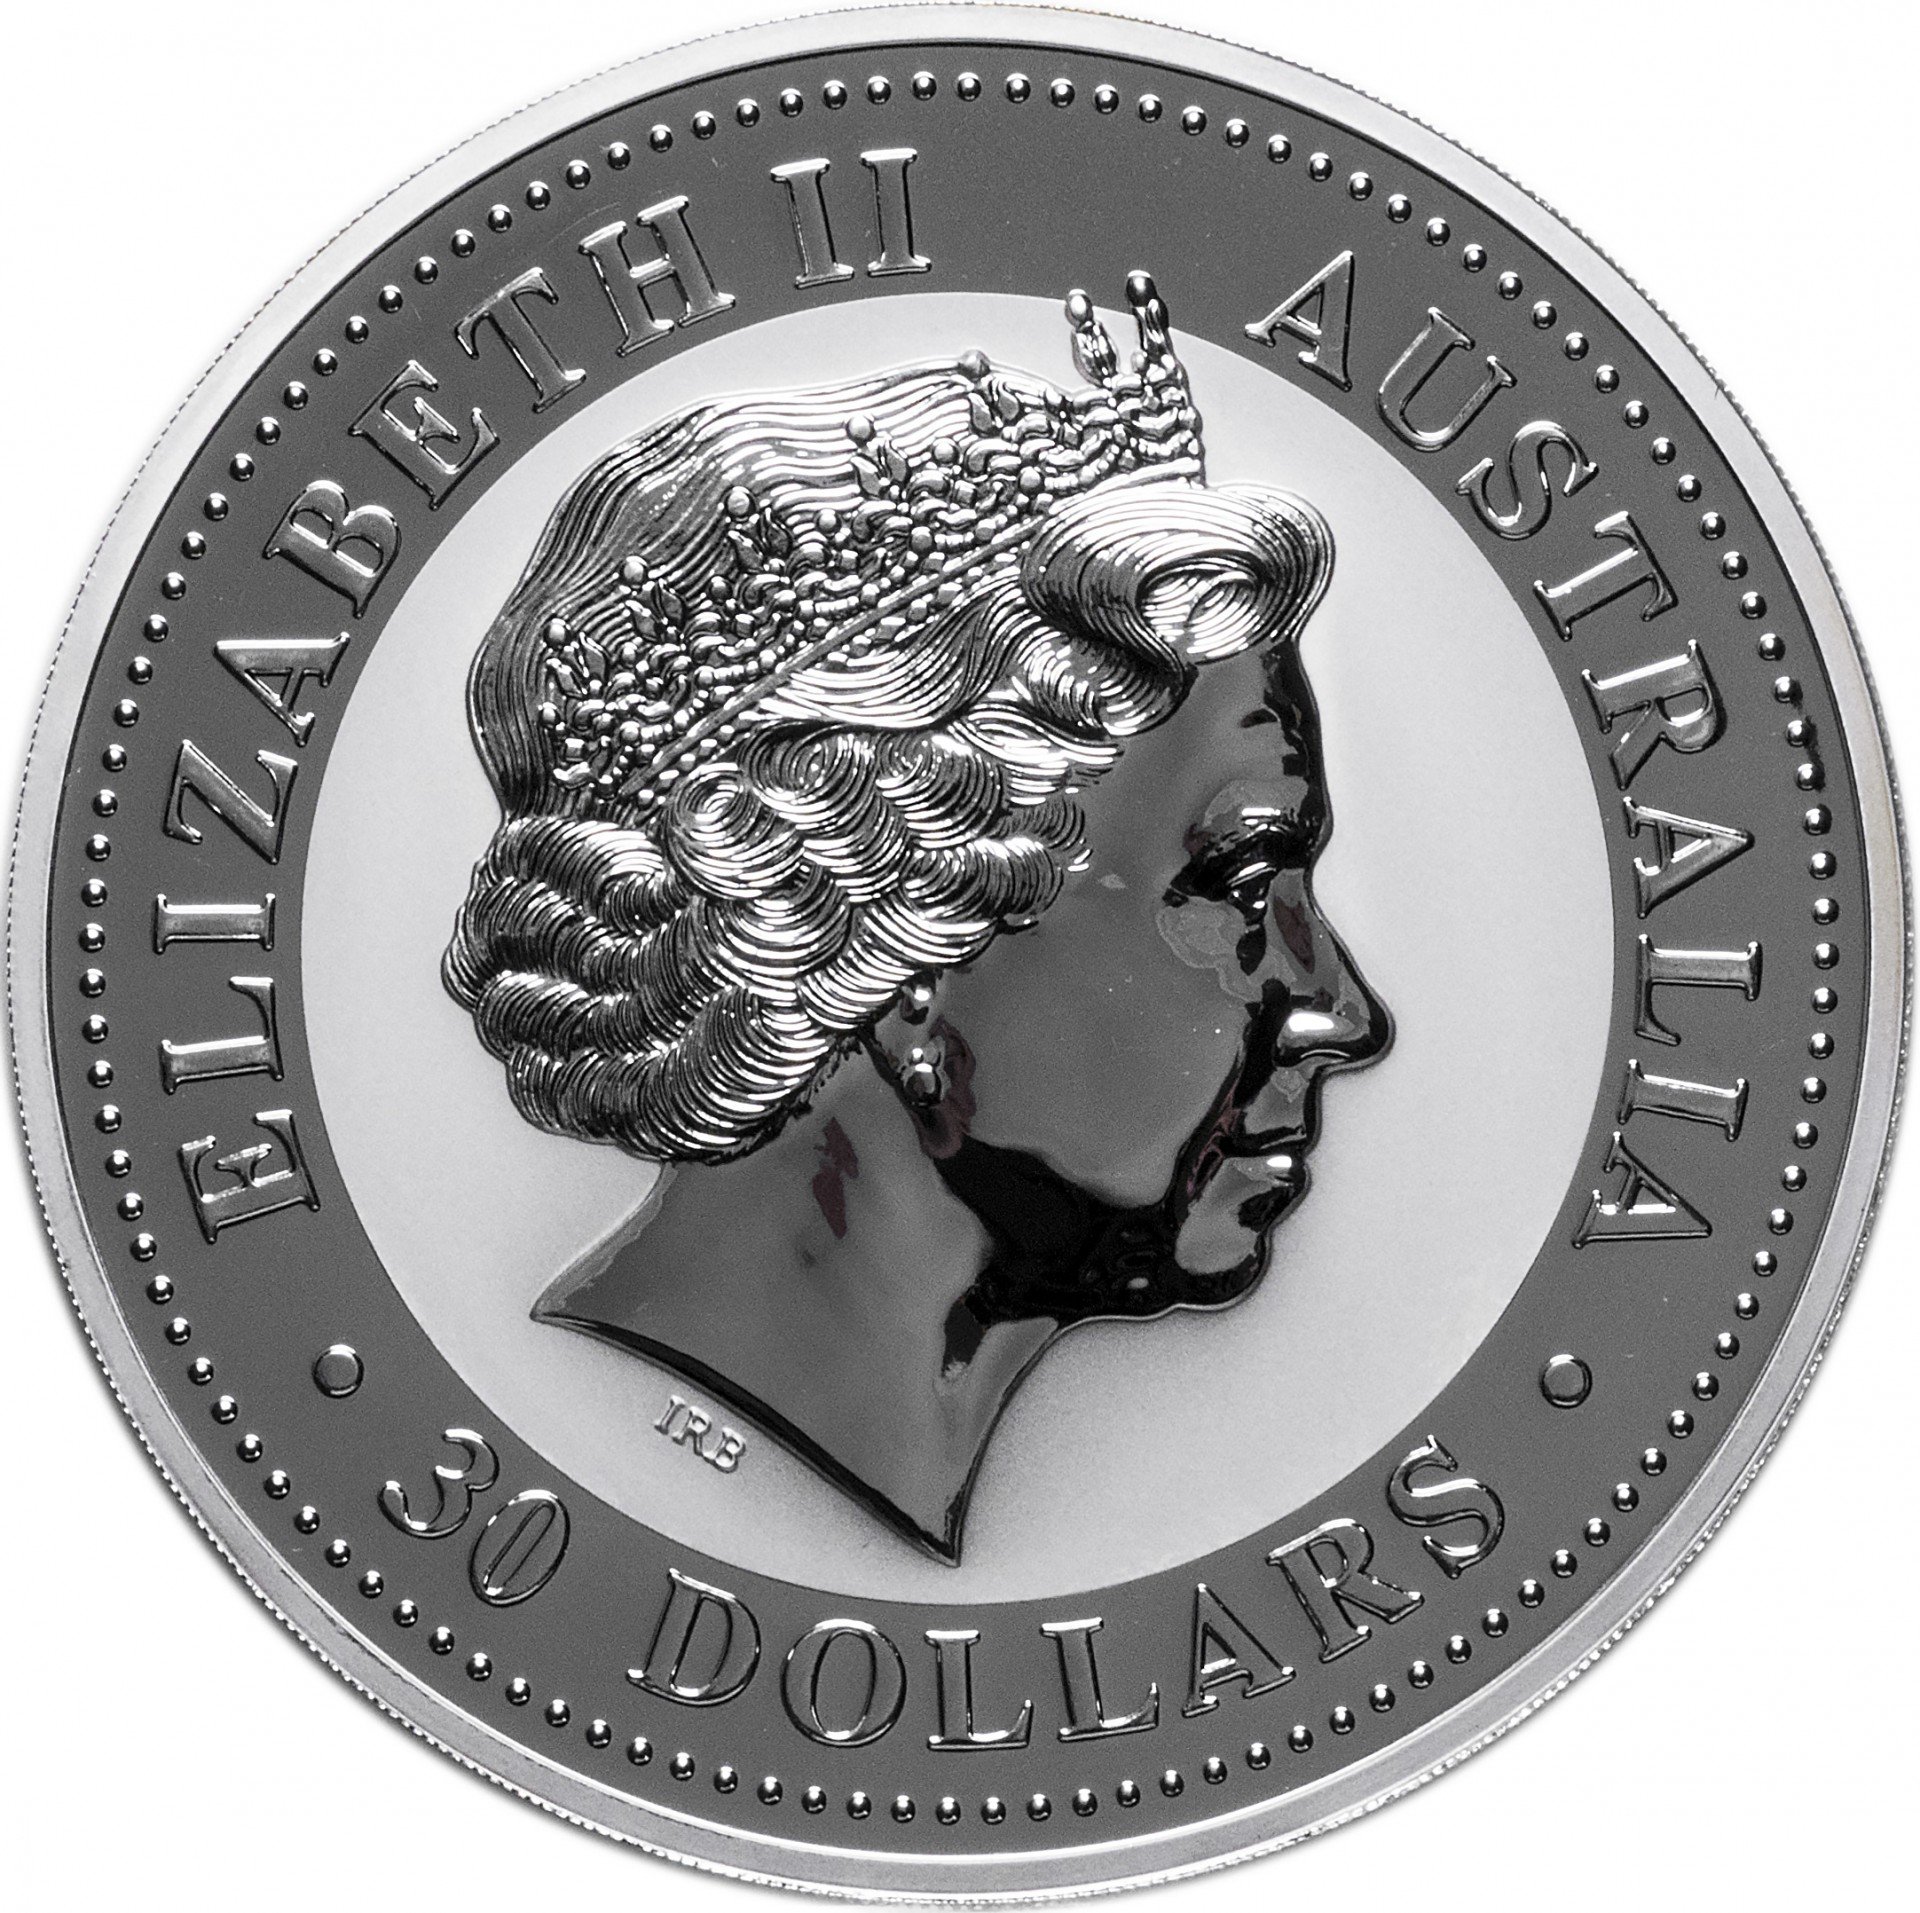 3 30 долларов. Австралия 1 доллар, 2003 австралийская Кукабарра. Серебряная монета Австралии с кукабаррой 23. 30 Долларов. 30 Долларов в монетах.